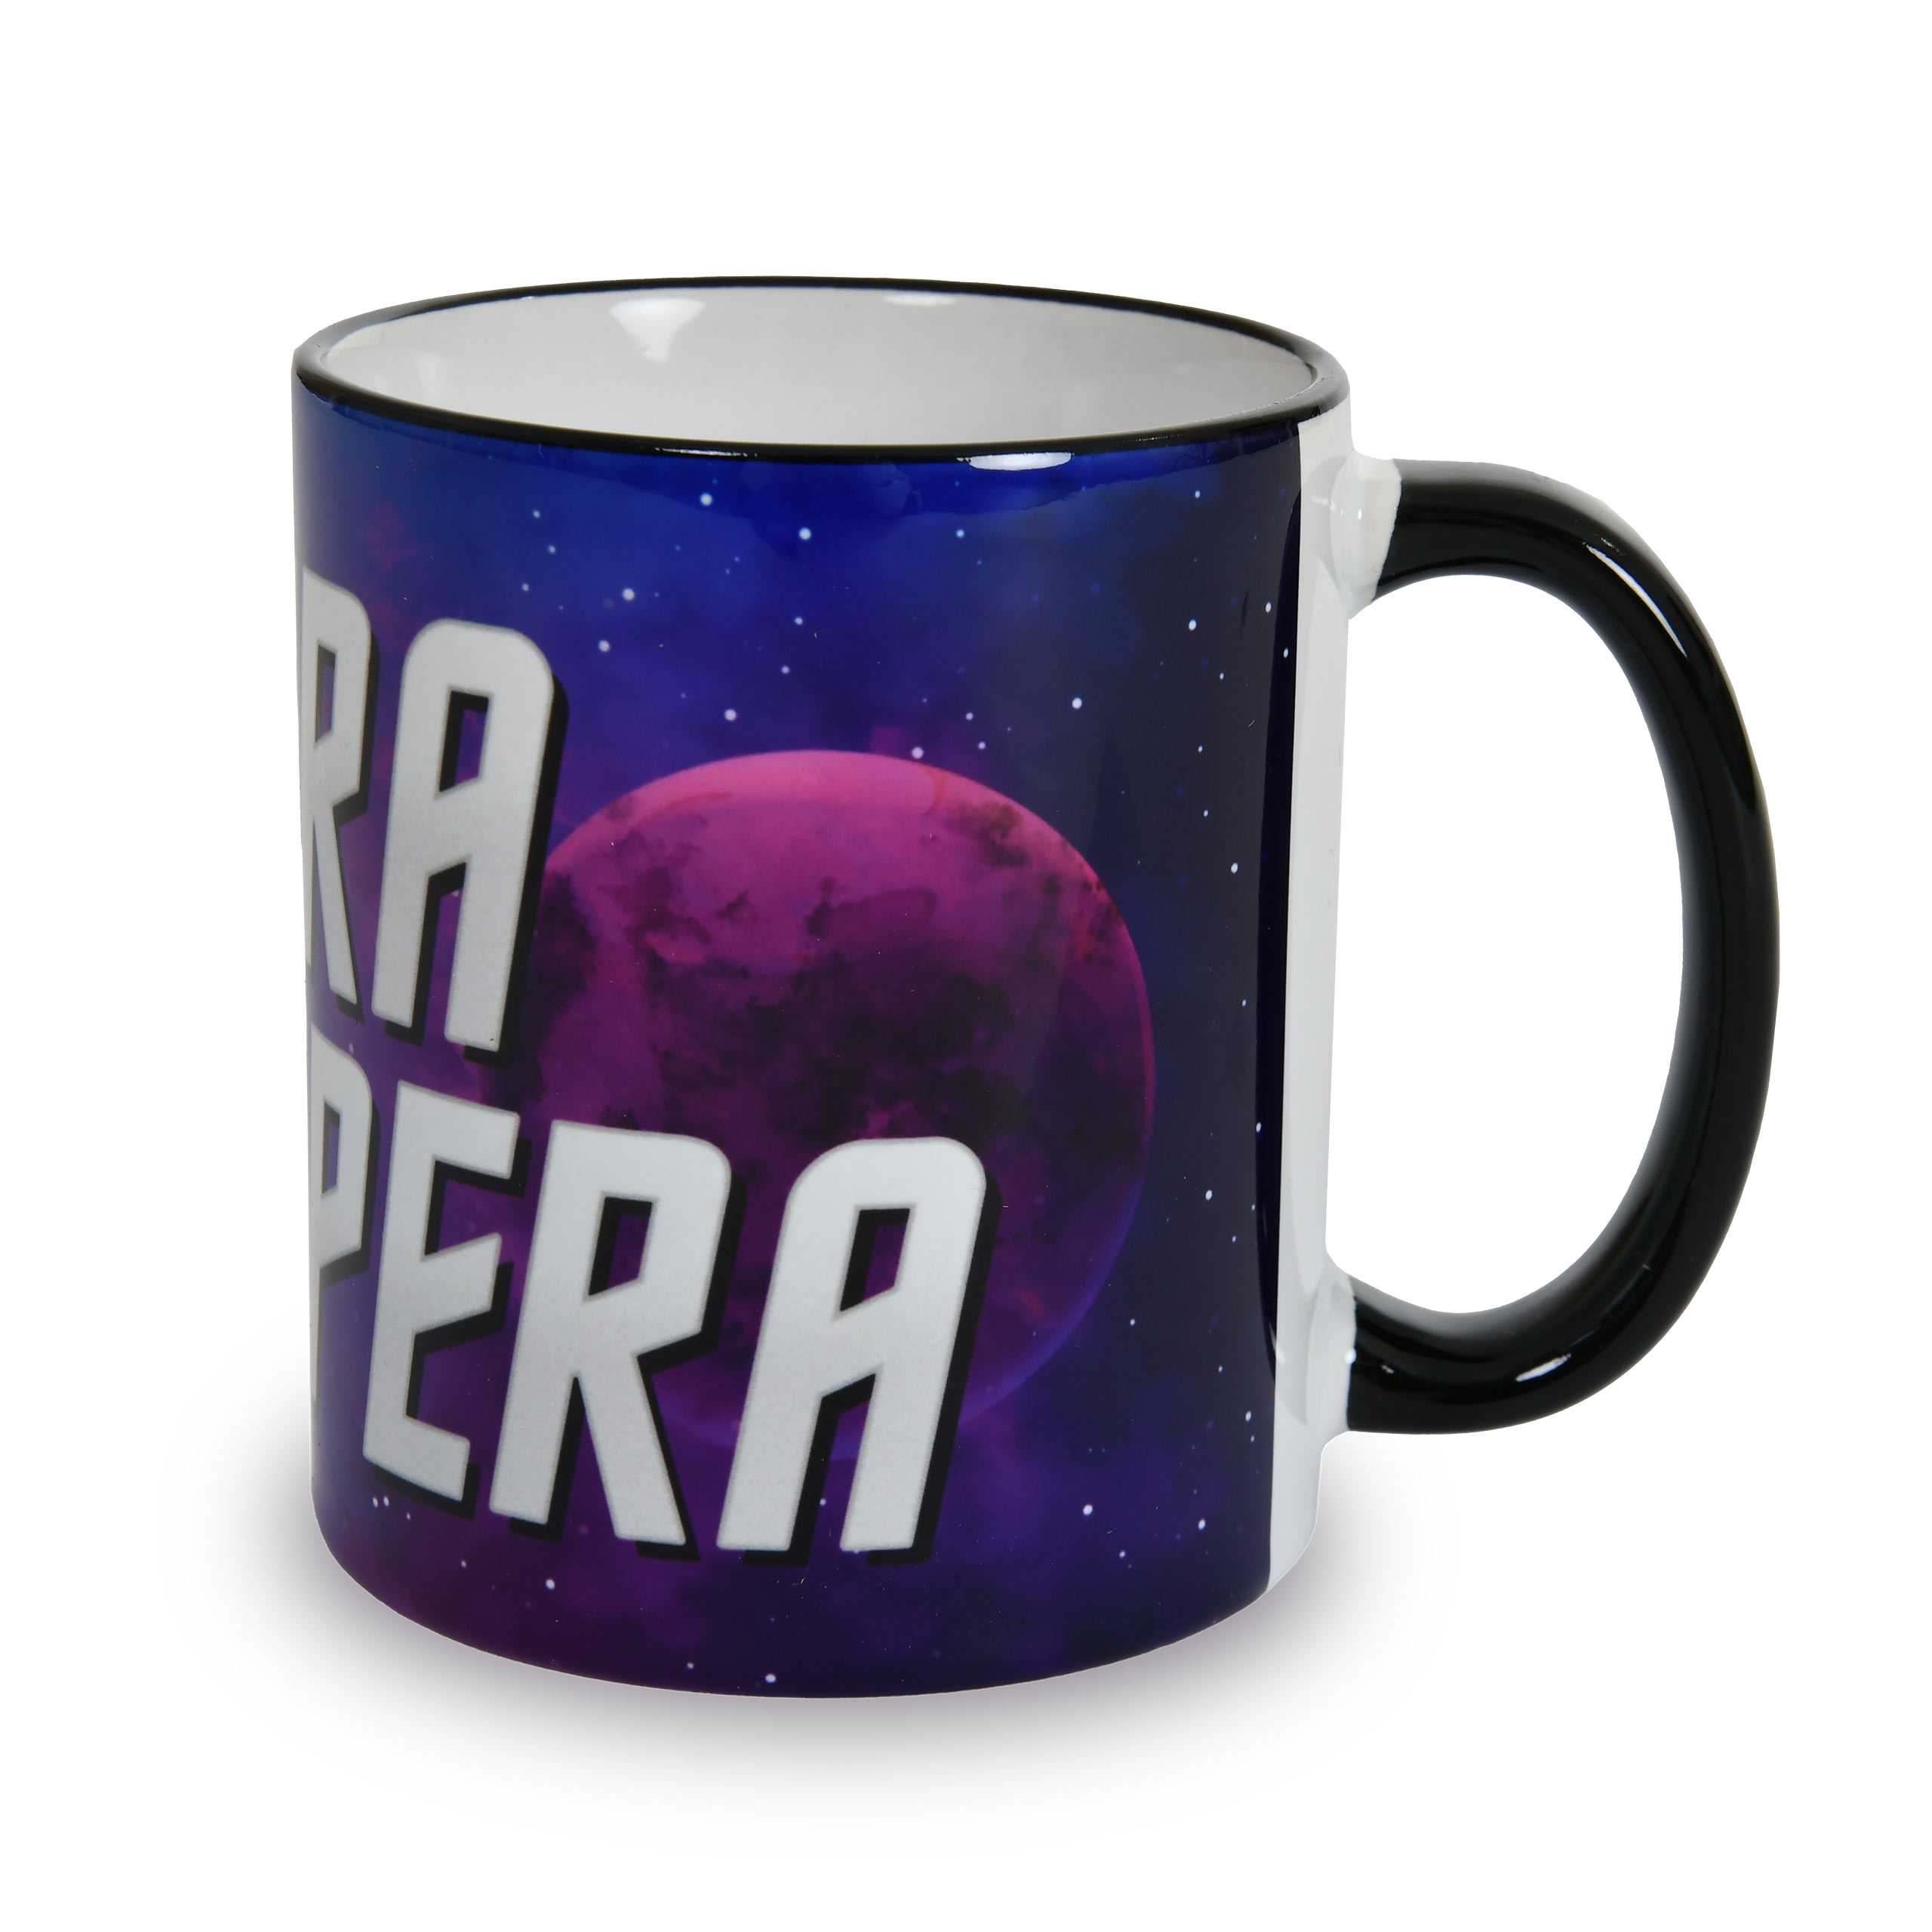 Ad Astra Per Aspera mug for Star Trek fans